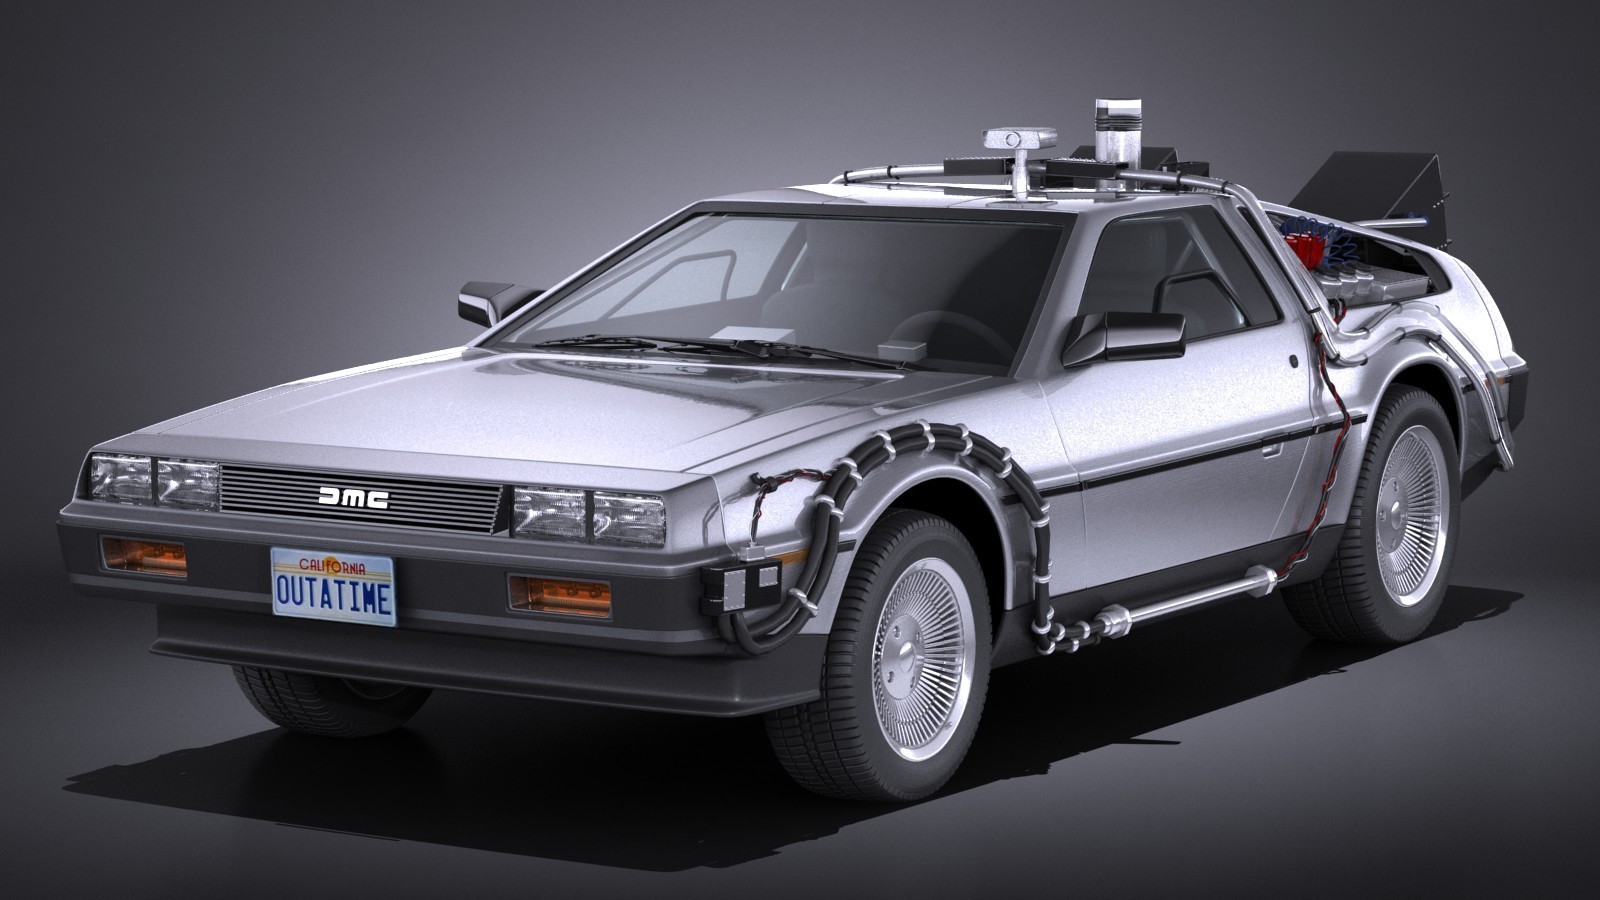 Siêu xe "Back To The Future" được hồi sinh, trở thành xe thể thao động cơ điện